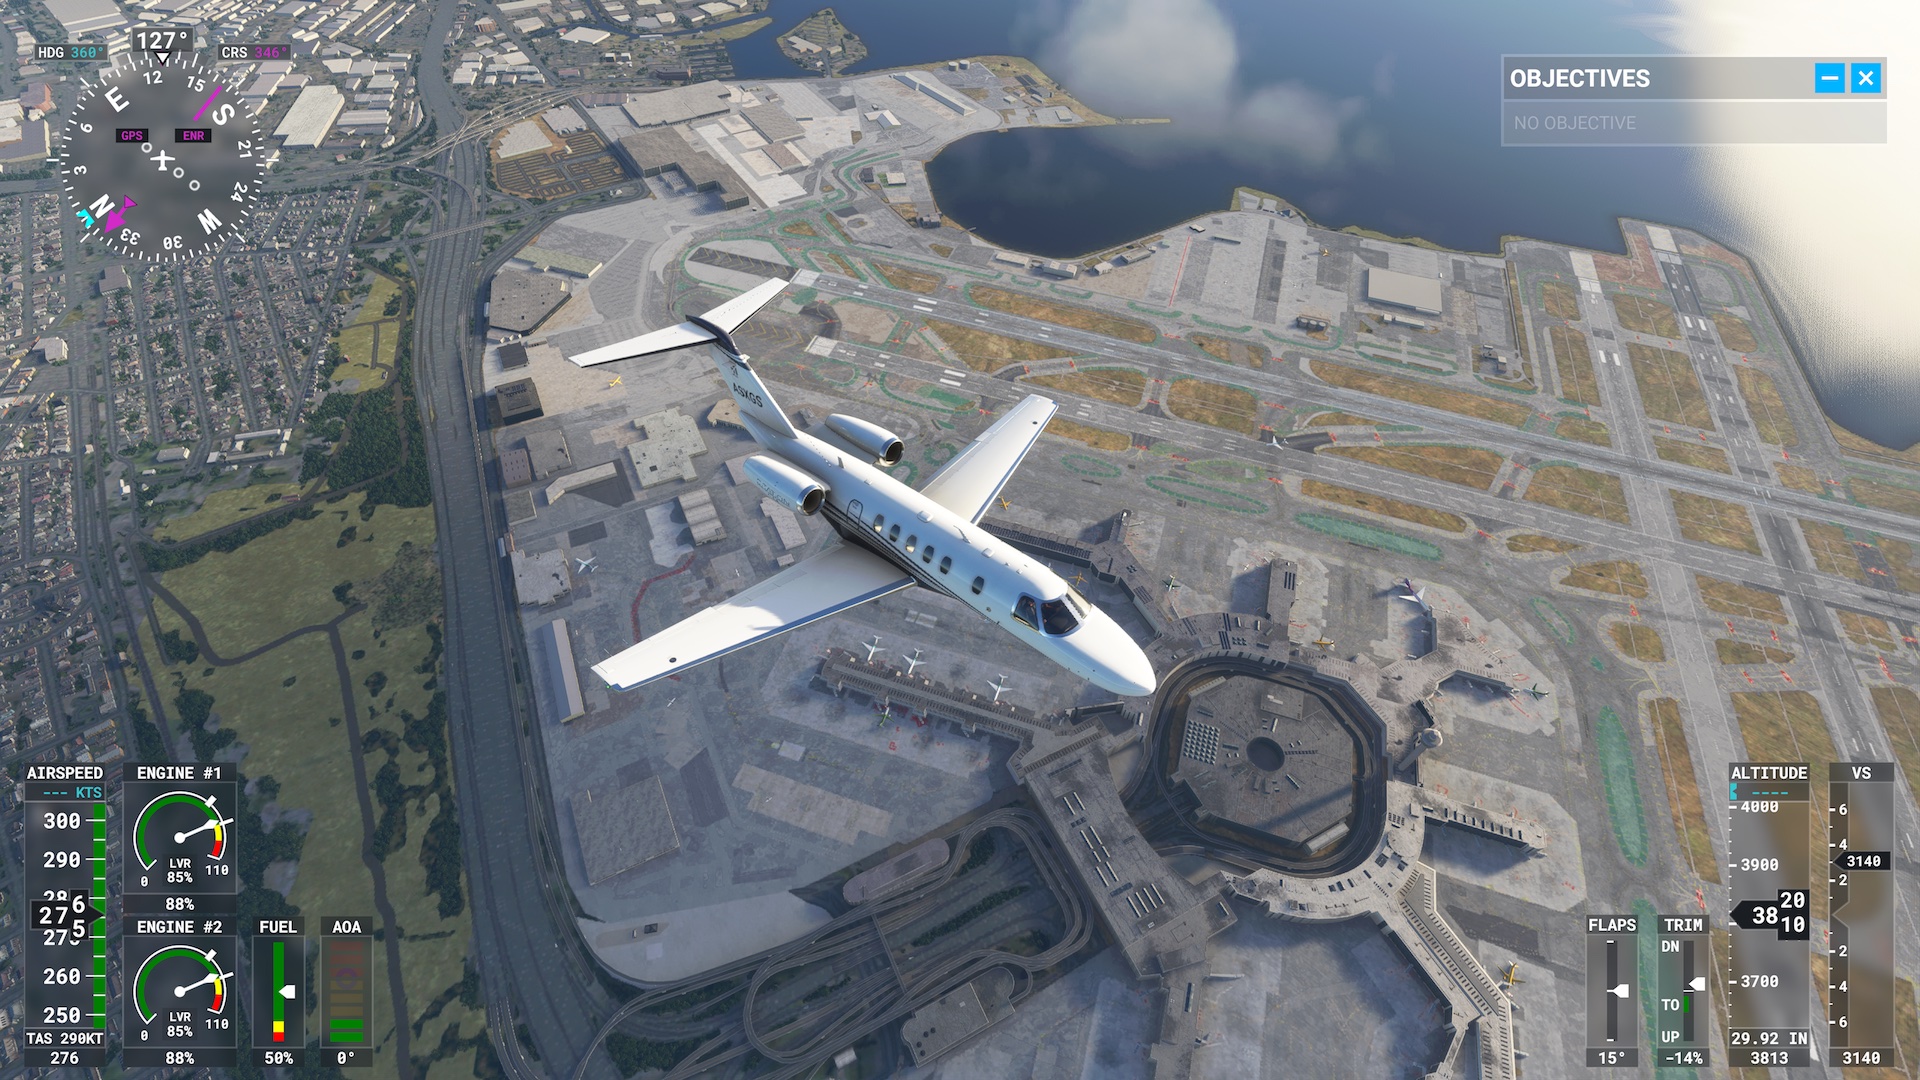 Microsoft Flight Simulator chega para PC dia 18 de agosto a partir